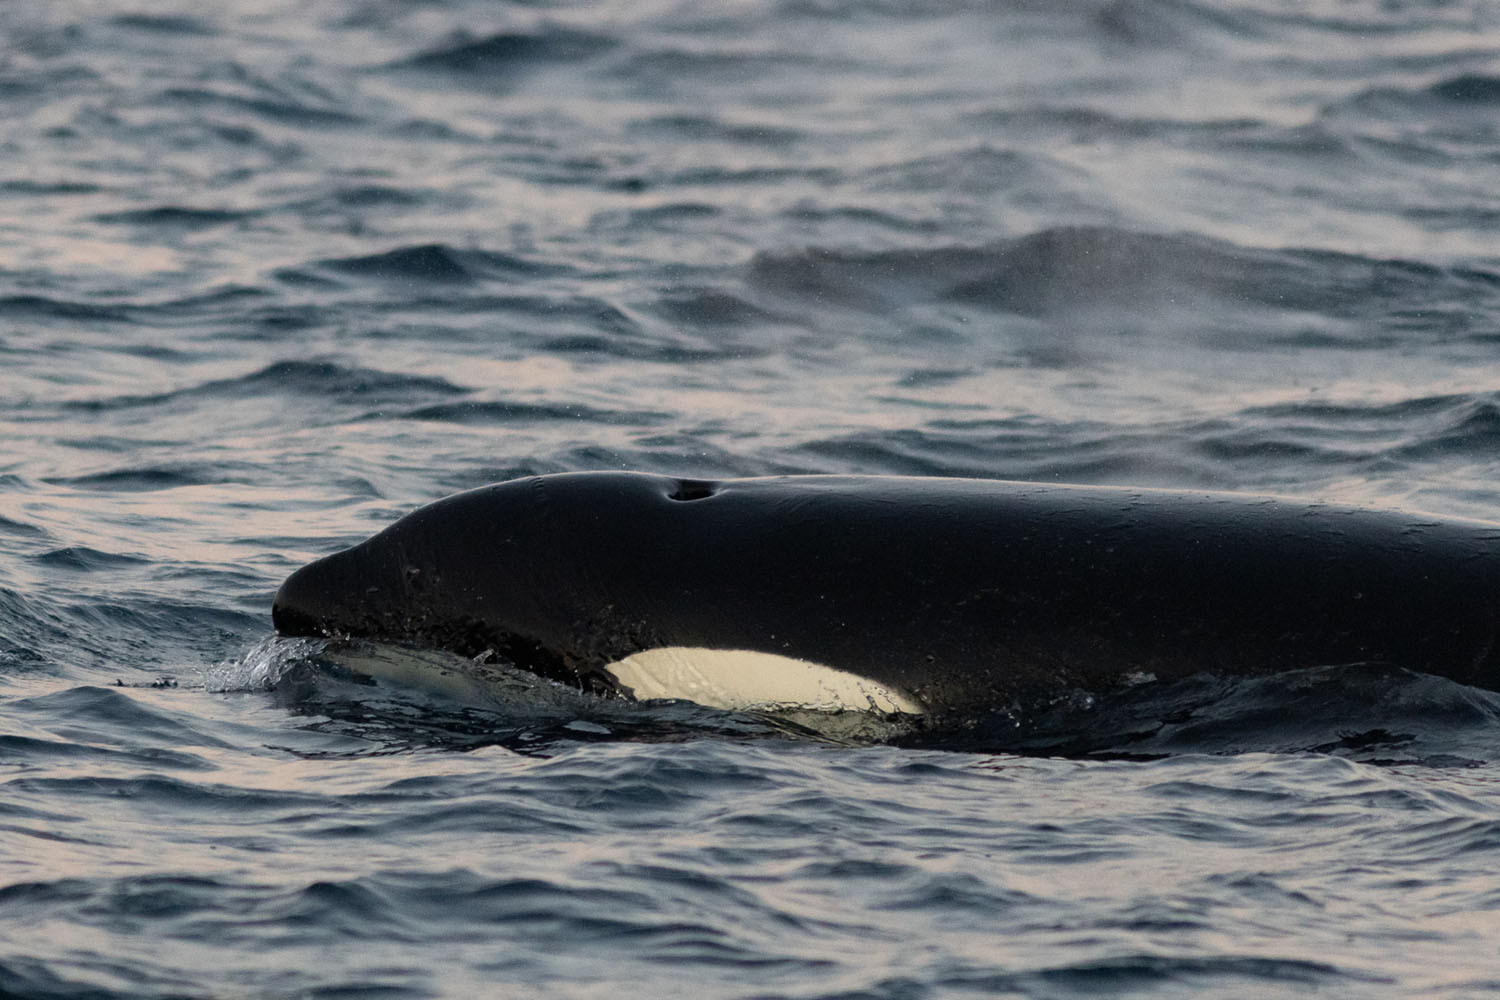 voyage scientifique - orques et baleines a bosse de norvege 16